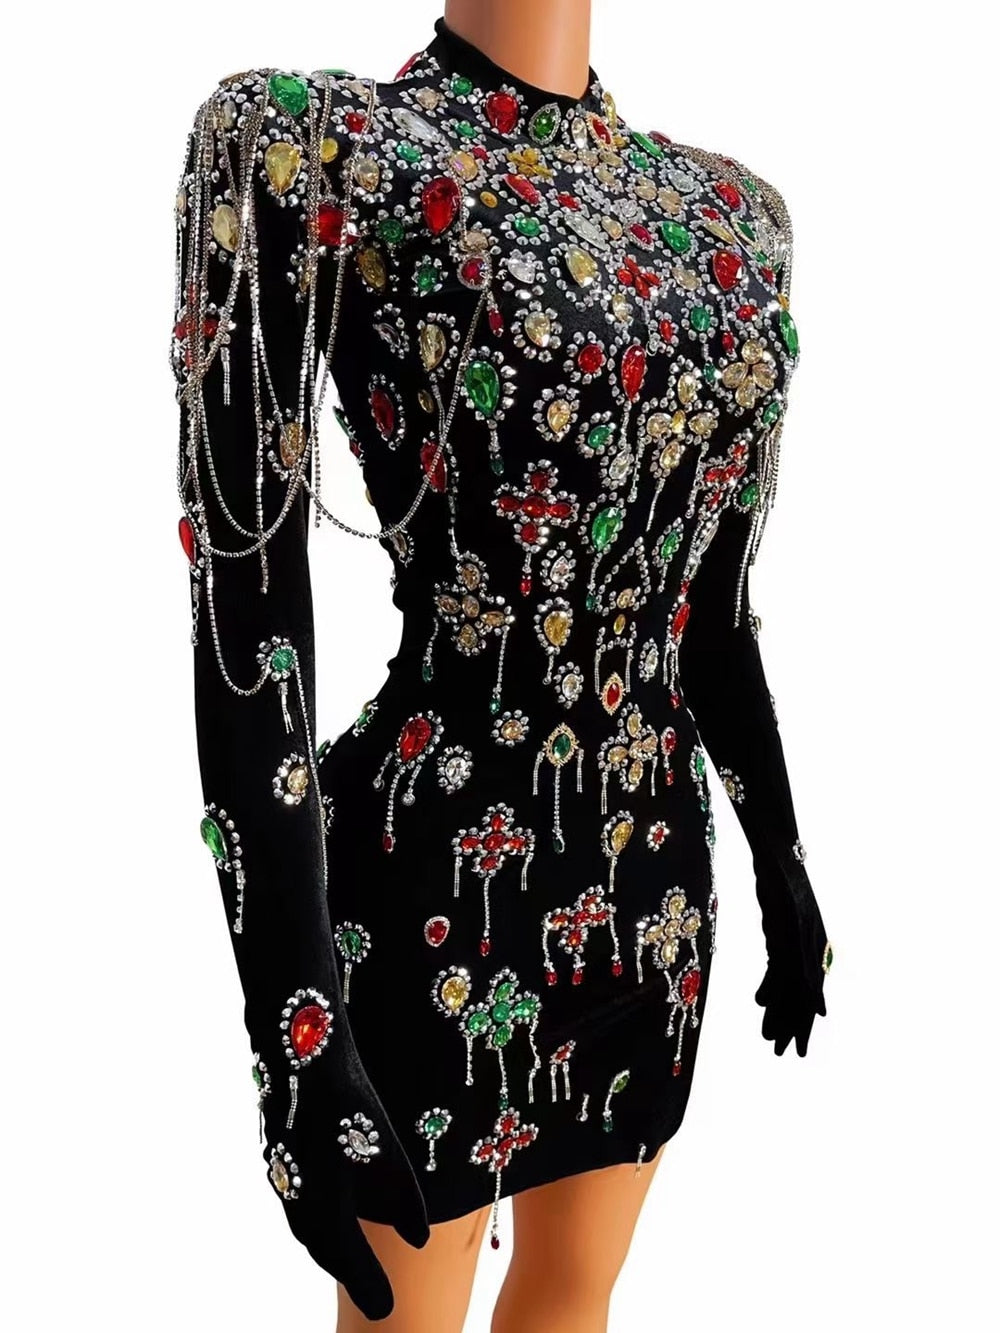 Multi-color Crystal Rhinestone Chain Velvet Short Dress